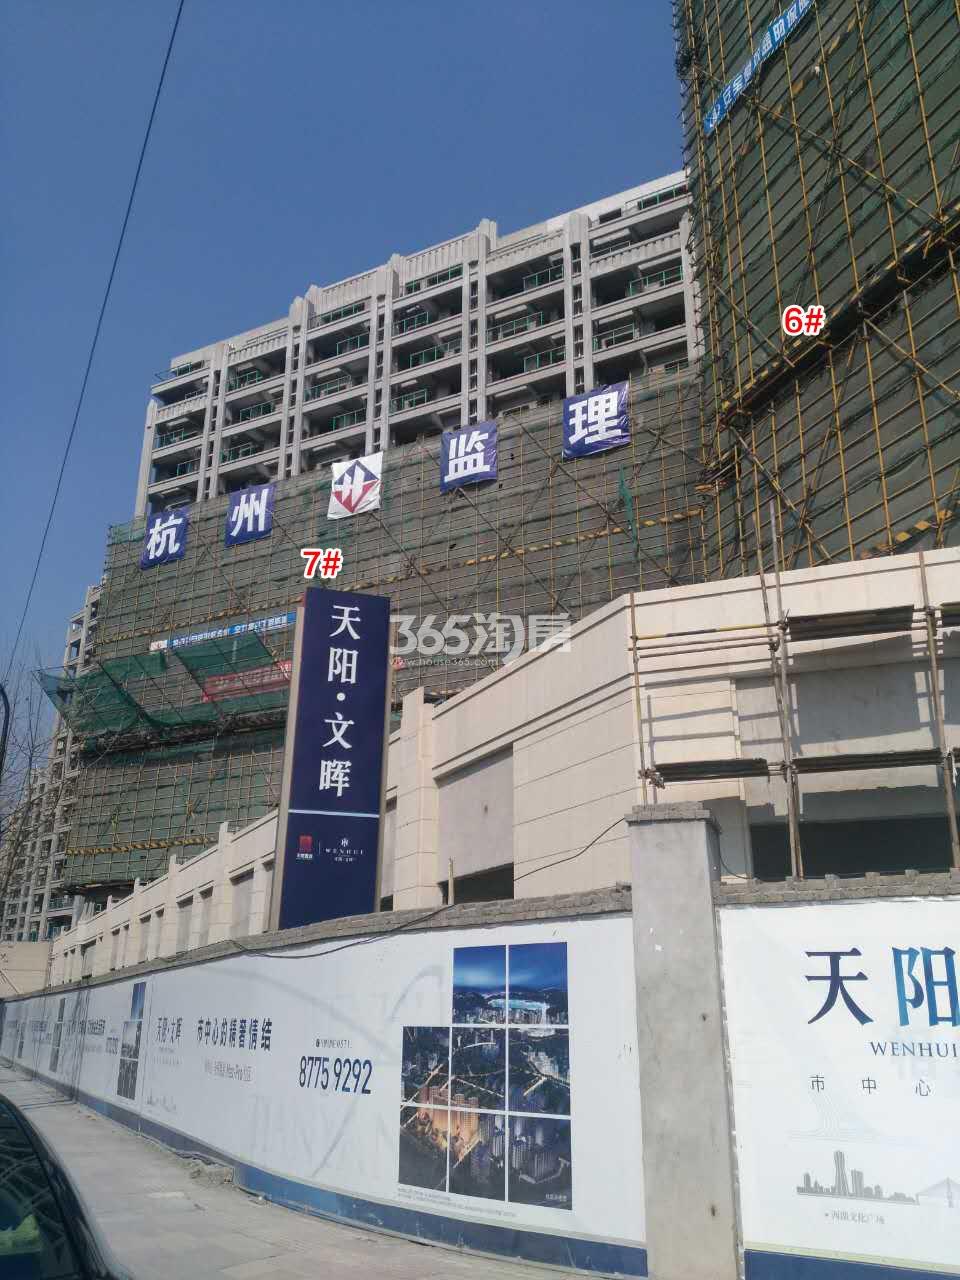 天阳文晖6、7号楼施工进度实景图 2017.2.14摄